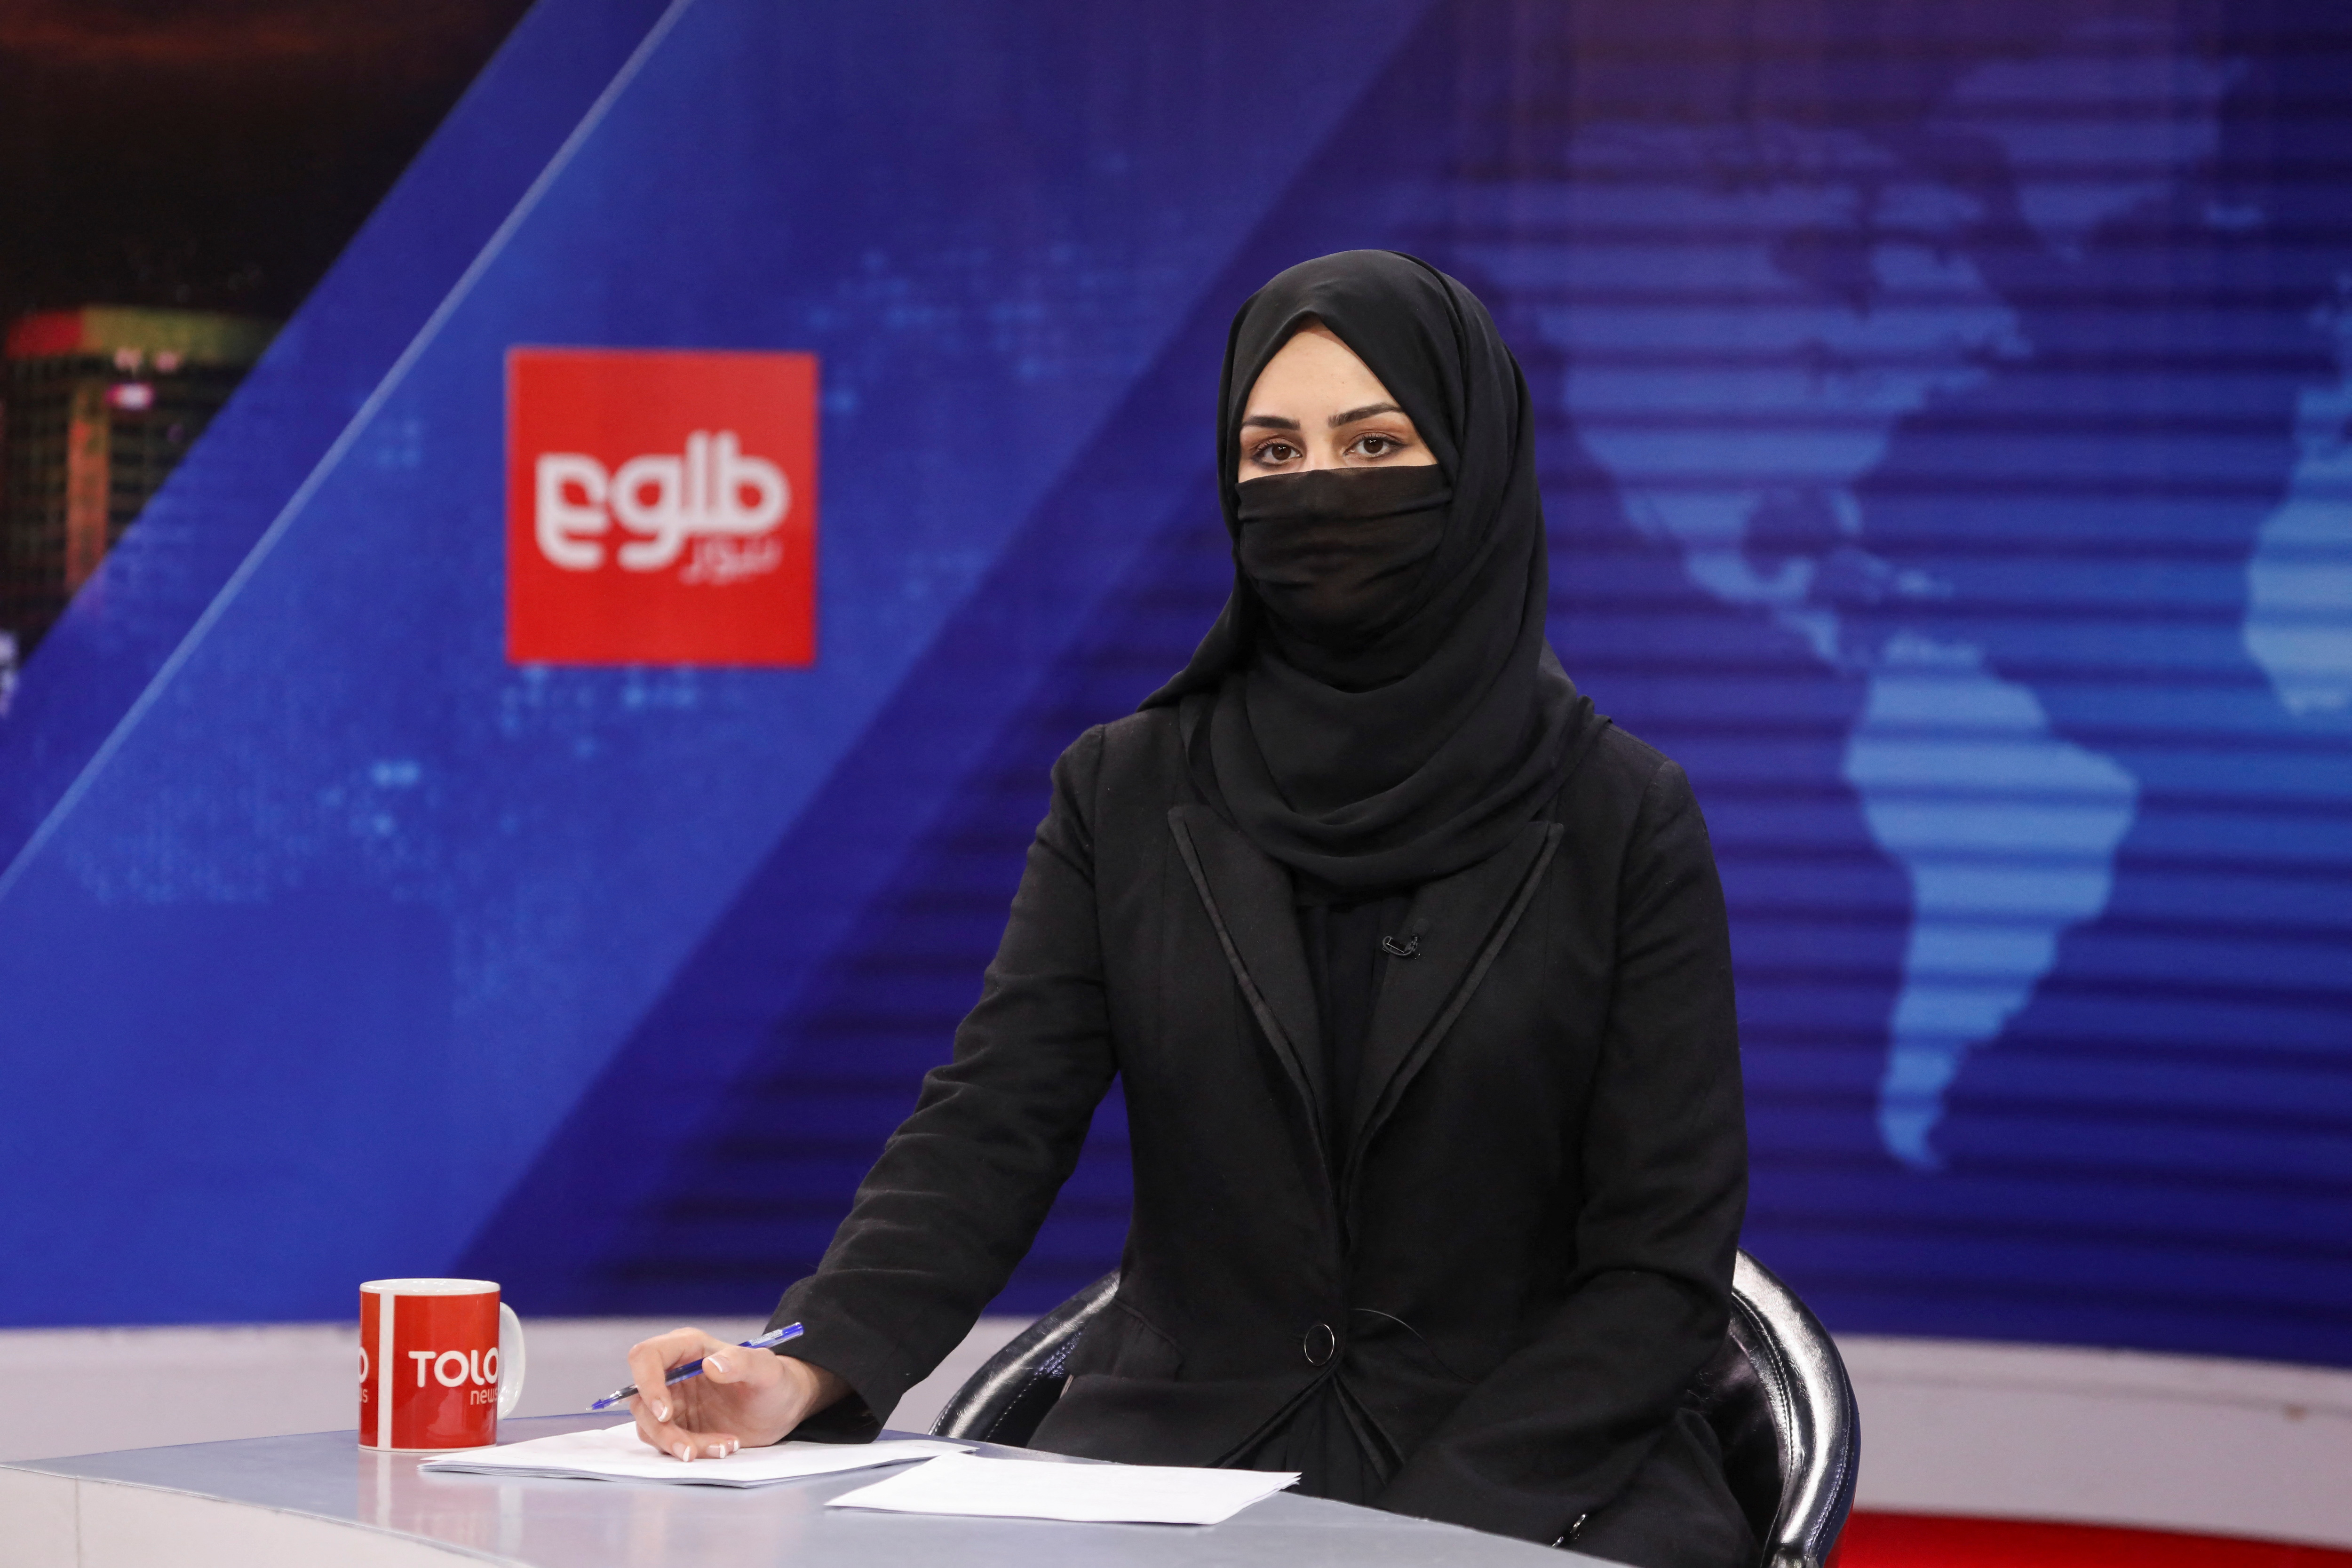 Una presentadora de Tolo News, Khatereh Ahmadi, comenzó a cubrirse el rostro hoy pro orden talibán (REUTERS/Ali Khara)